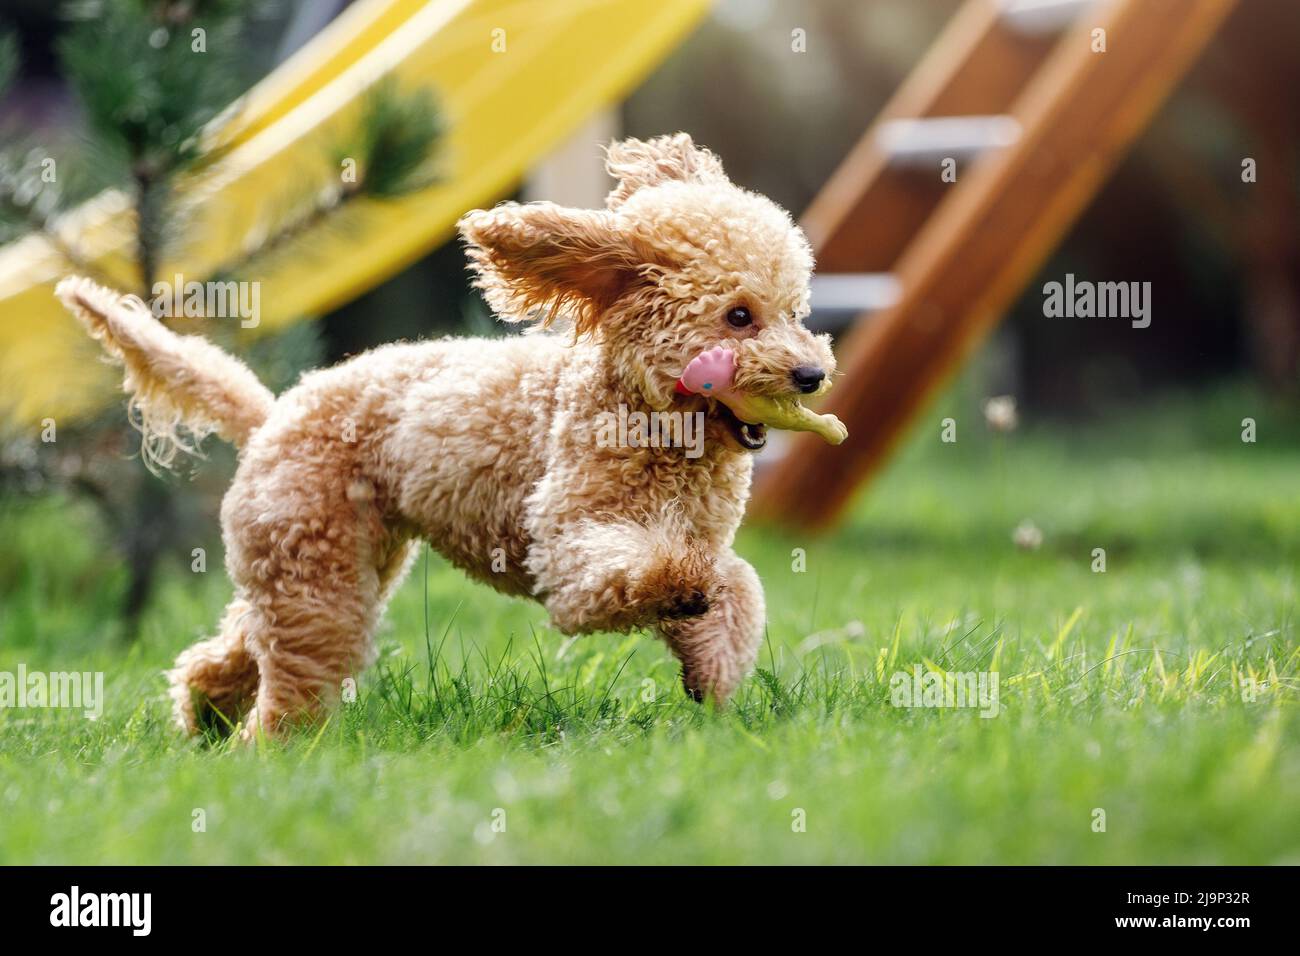 Niedlicher kleiner goldener Hund, der spielerisch auf dem grünen Rasen im Park läuft. Glücklicher Hund fliegt schnell und trägt ein aus Gummi geformtes Spielzeug in seinem Mund Stockfoto